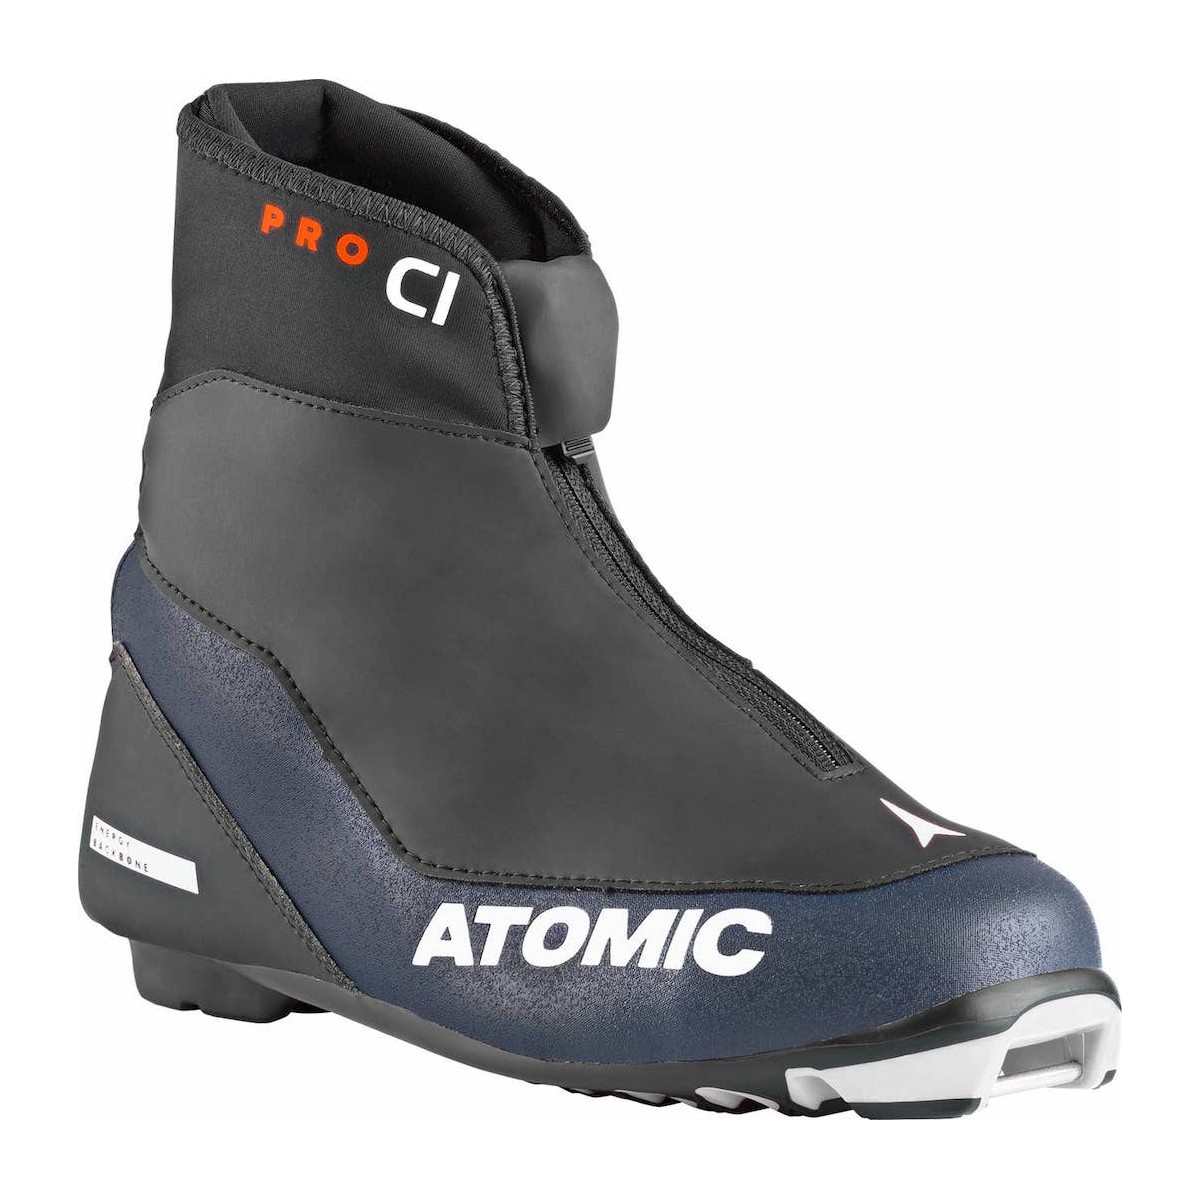 ATOMIC PRO C1 W PROLINK distanču slēpošanas zābaki - melns/zils